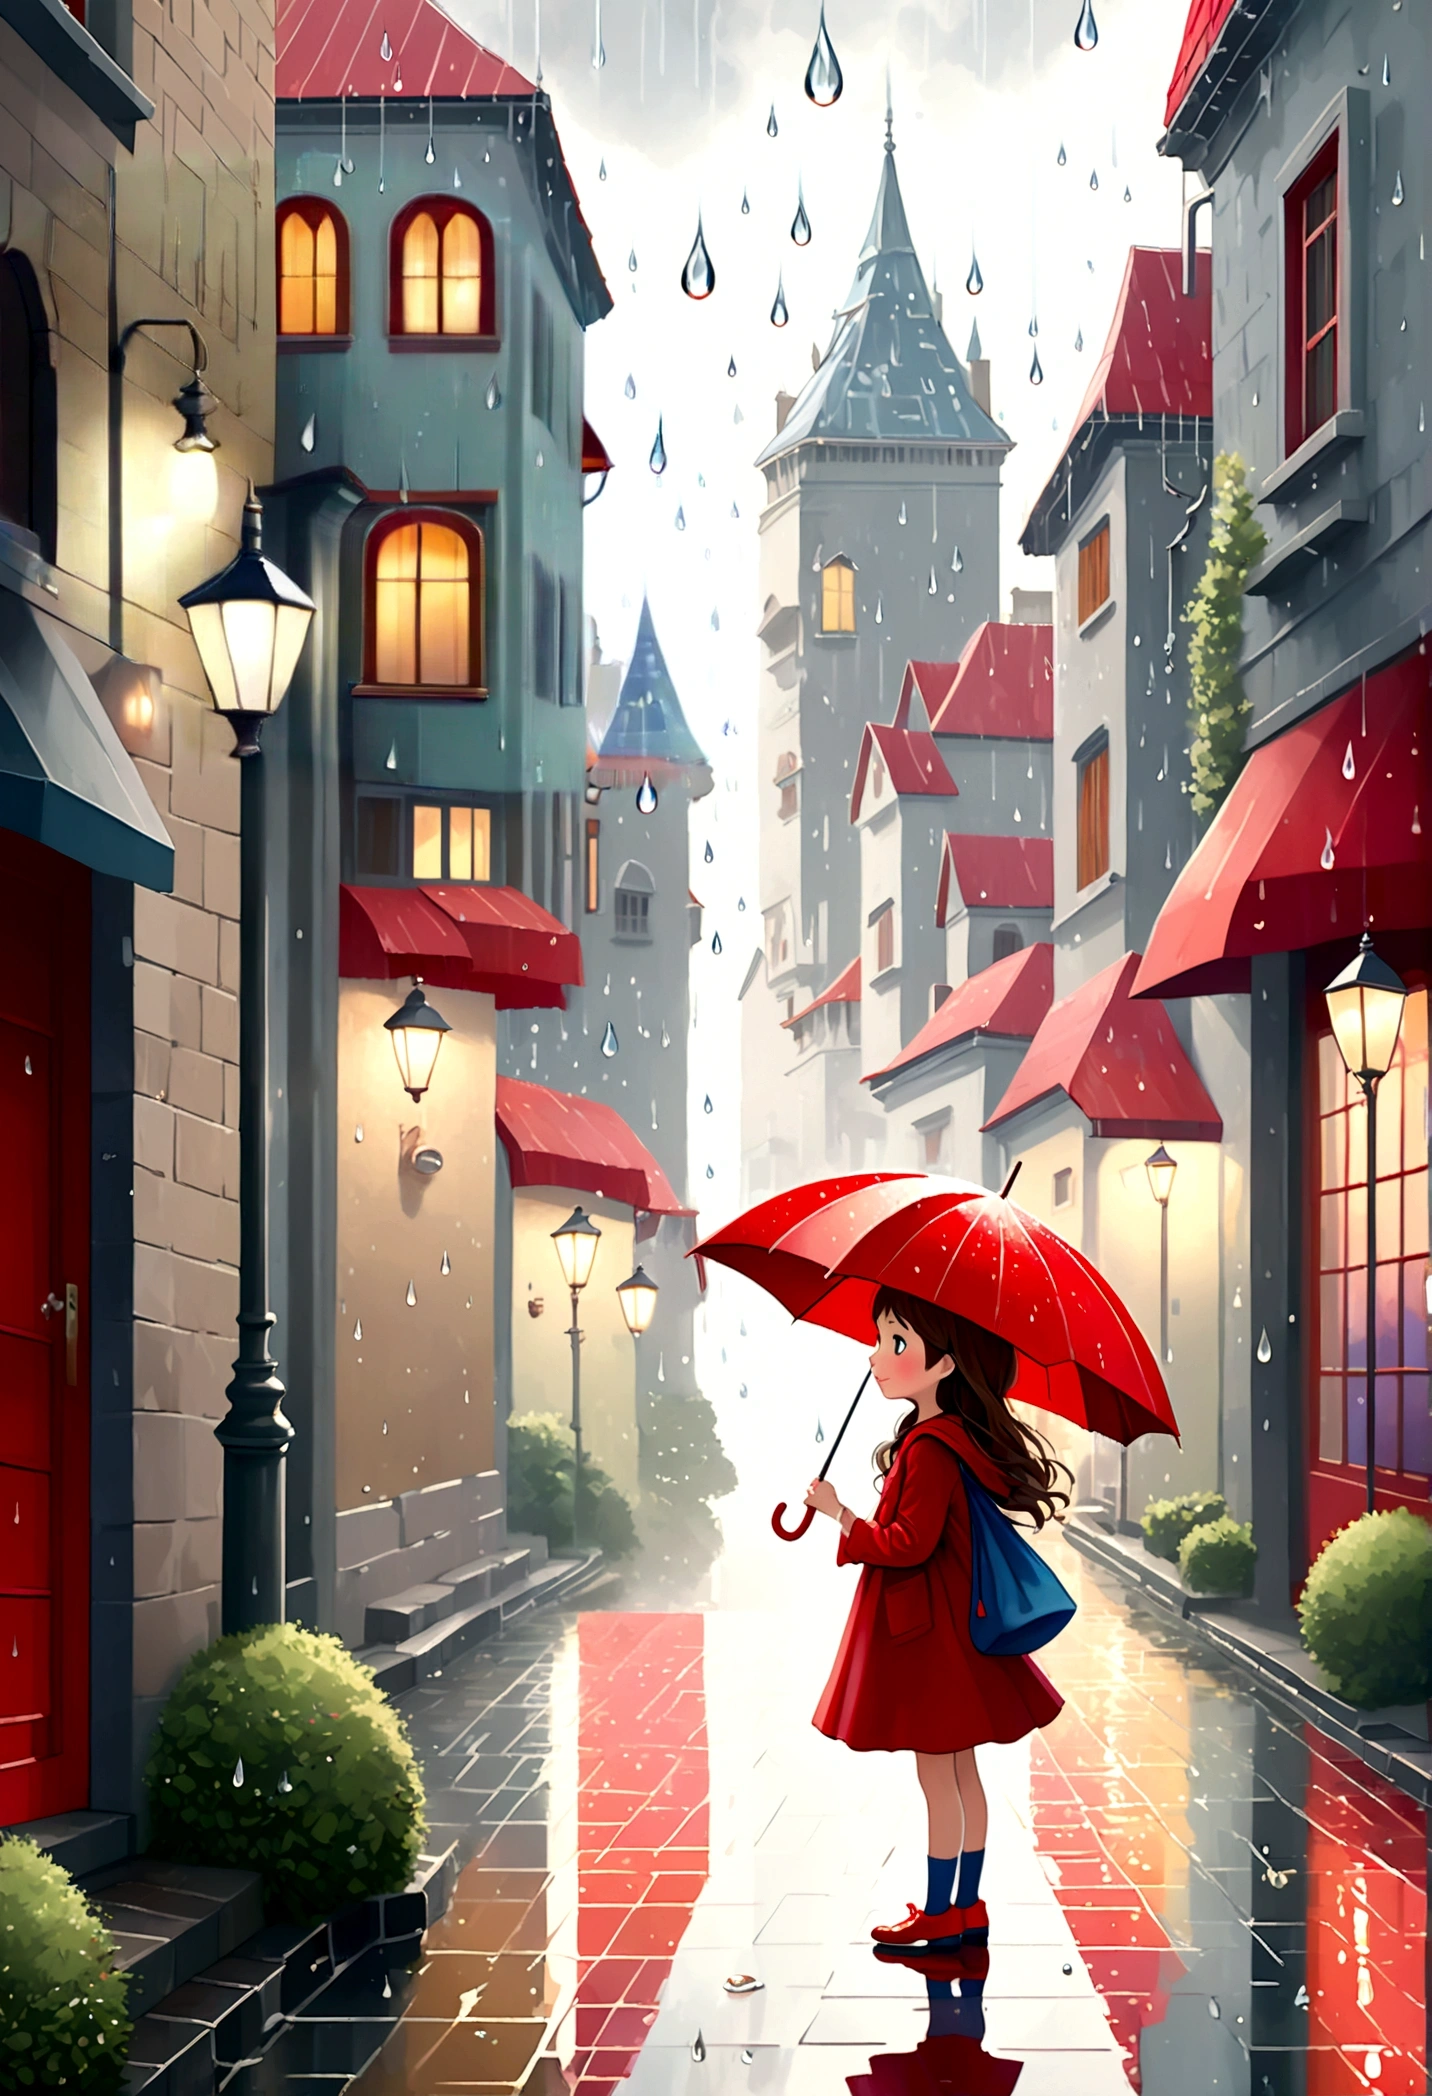 修正,かわいいイラスト: 風景,雨の日の街角,絵本に出てくるような風景,感情豊かな,赤い傘を持ったかわいい女の子,芸術的な背景を作成する,背景にドロップパターンを追加する,通りは華やかだ, おとぎ話のような,夢のような可愛いイラストですね.,水滴模様の線をぼかして芸術的な表現をしてください.,複雑なディテール,豊富なカラーバリエーション,アートワーク,レンダリング,(傑作:1.3),(最高品質:1.4),(非常に詳細な:1.5),高解像度,非常に詳細,ユニティ 8k 壁紙